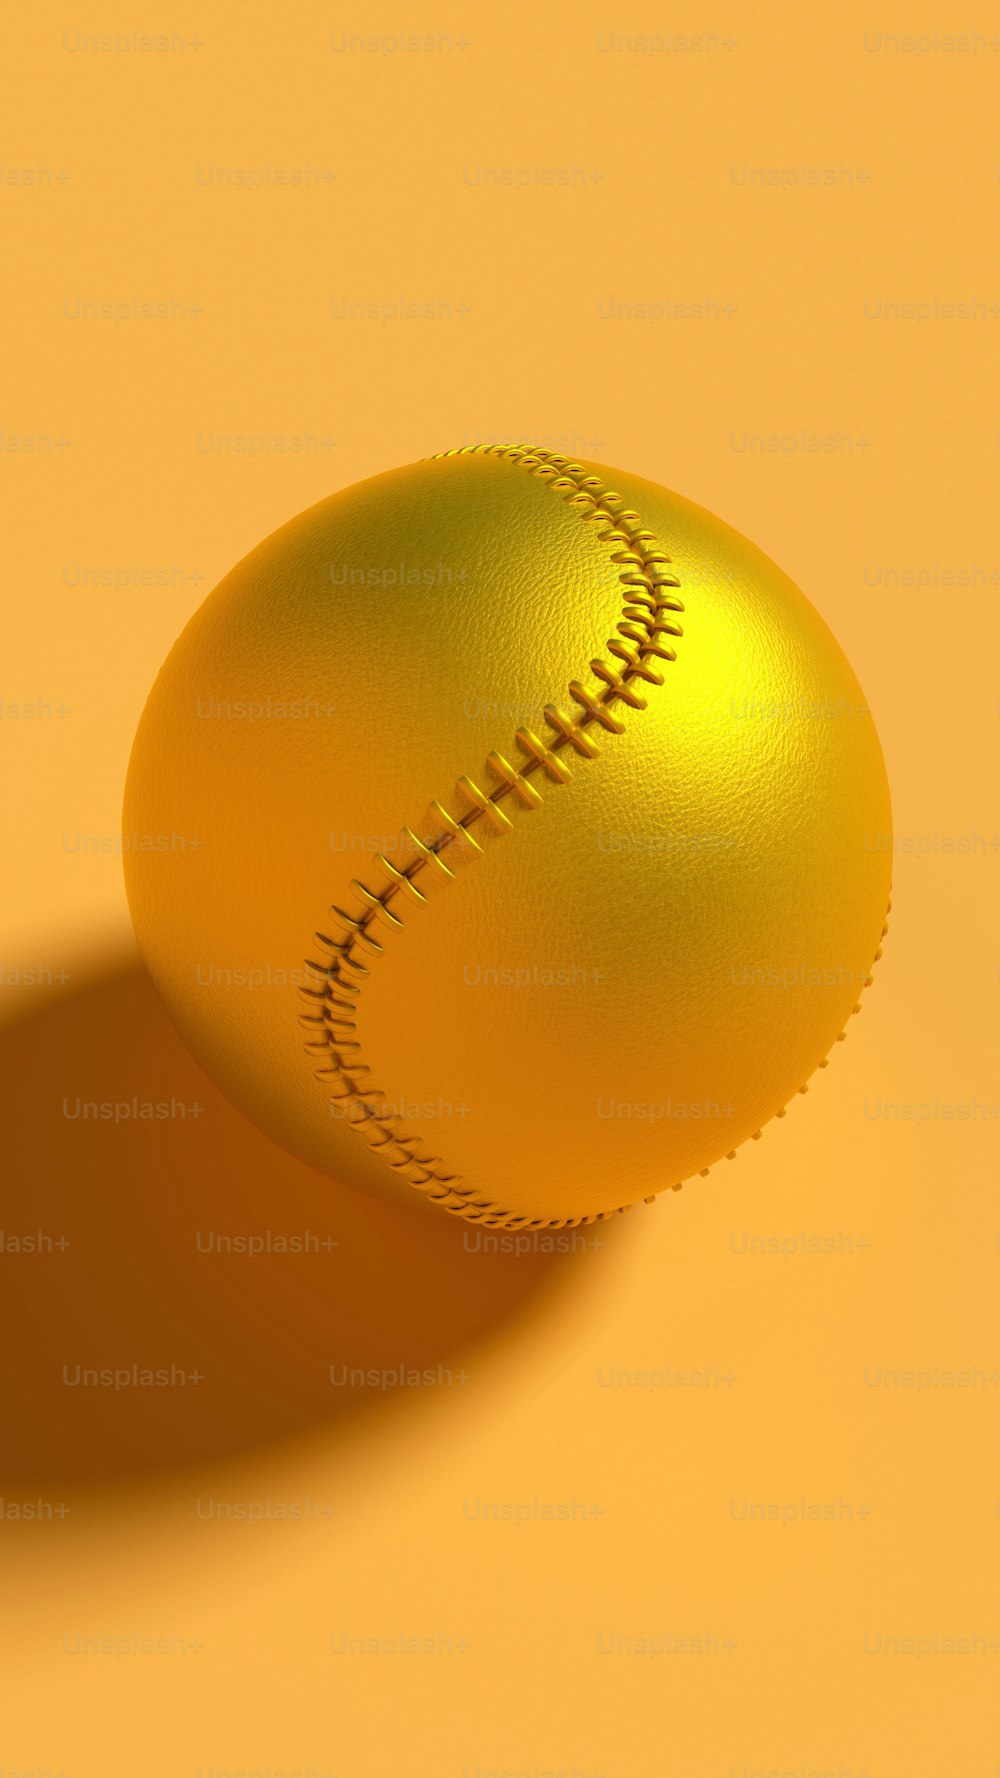 Una palla da baseball dorata su uno sfondo giallo